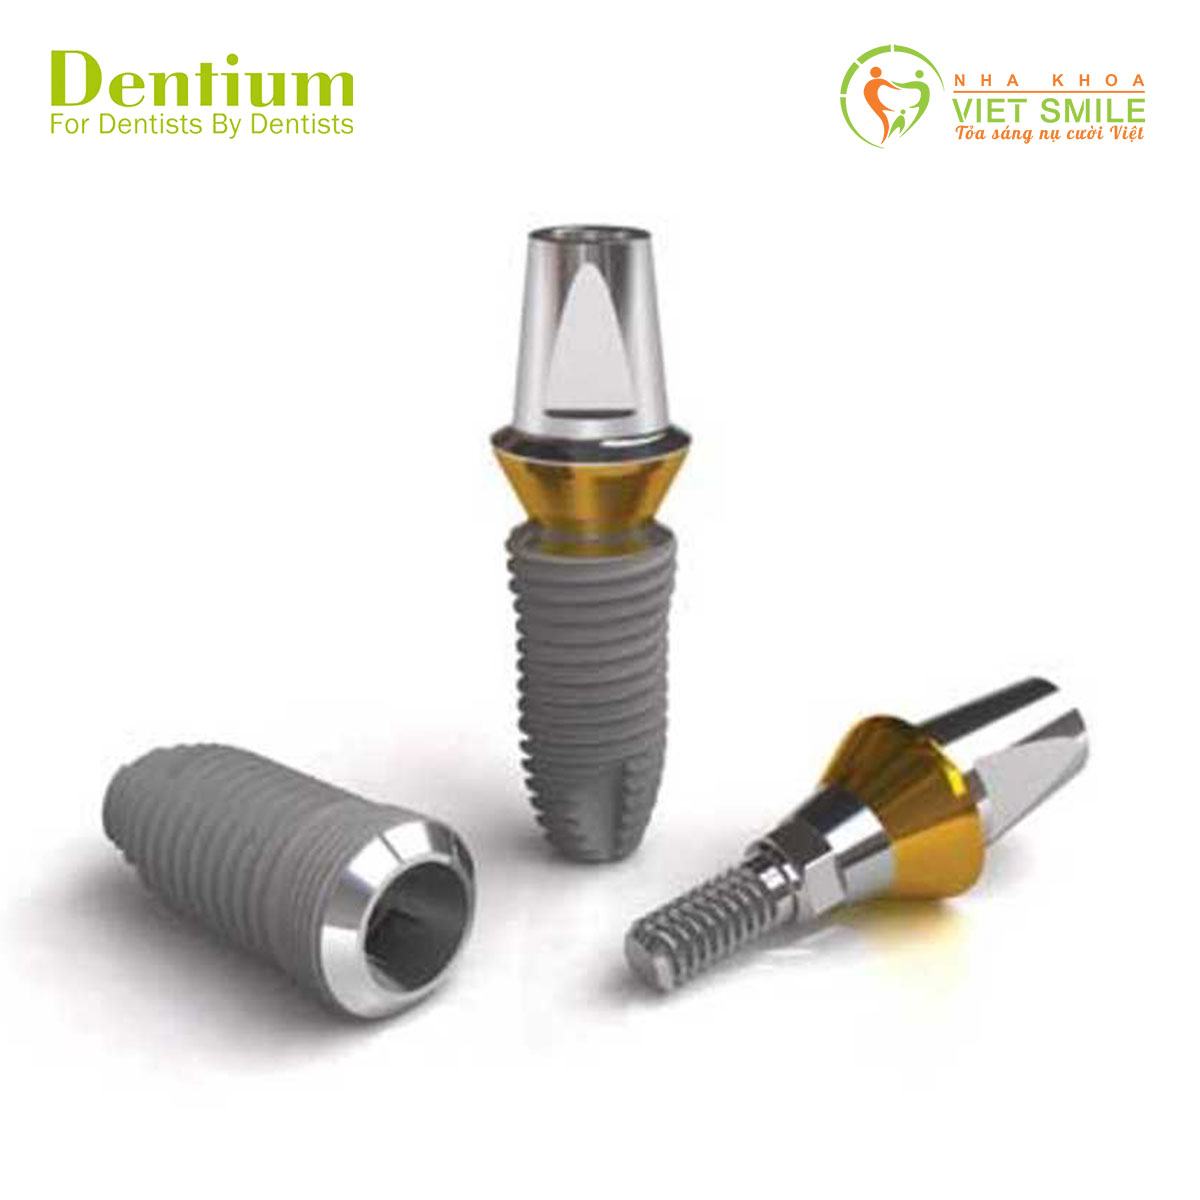 Trụ implant dentium